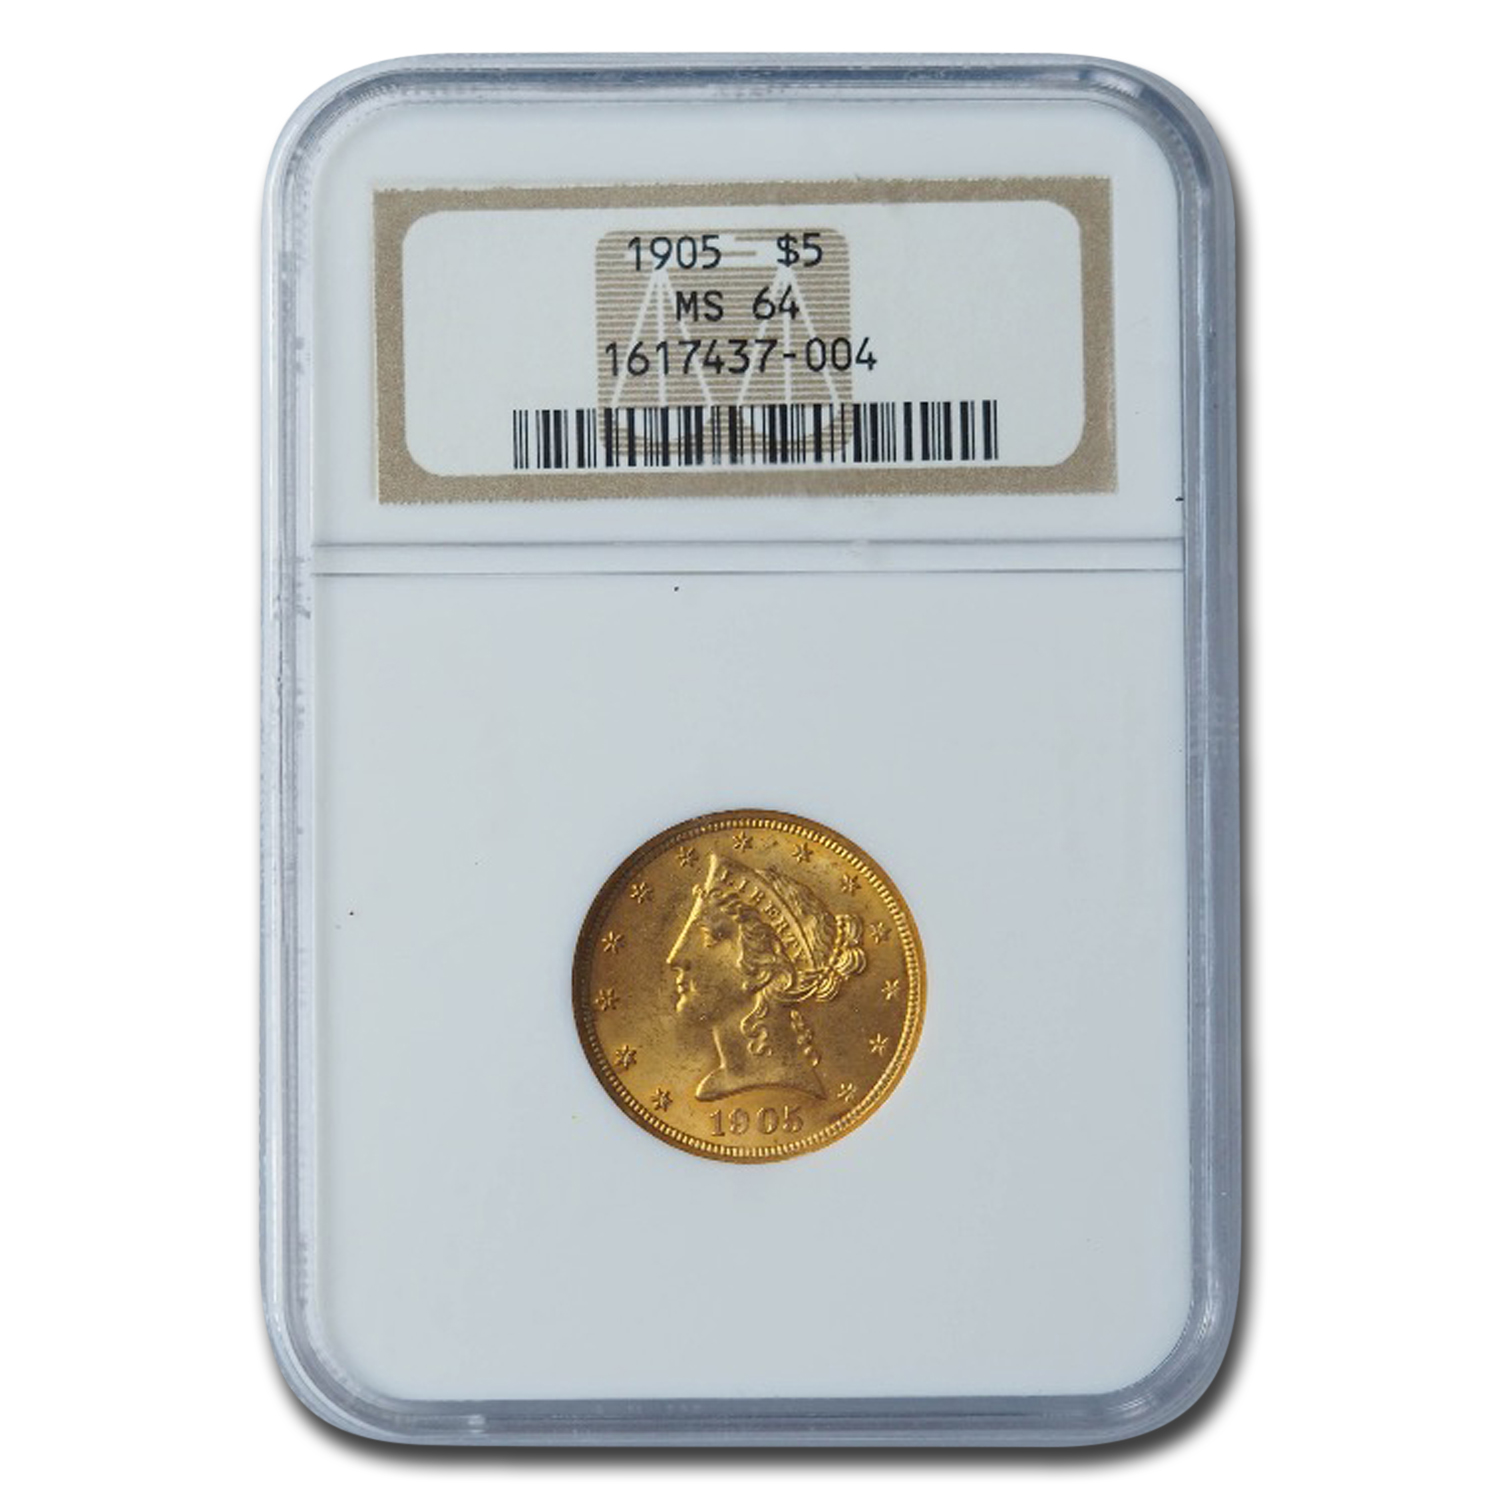 Buy 1905 $5 Liberty Gold Half Eagle MS-64 NGC